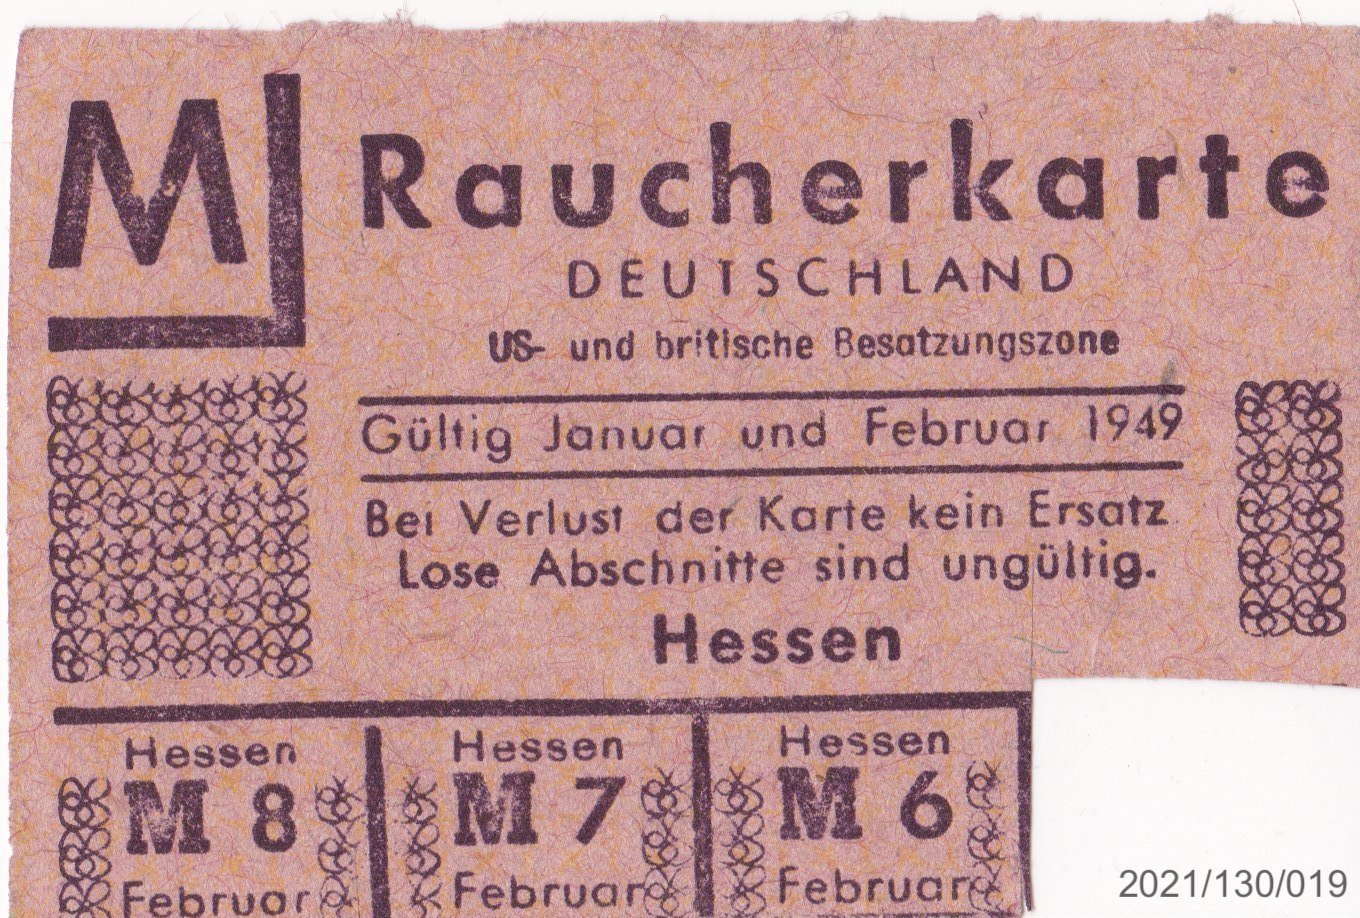 Raucherkarte Deutschland US- und britische Besatzungszone Februar 1949 (Museumsgesellschaft Bad Dürkheim e. V. CC BY-NC-SA)